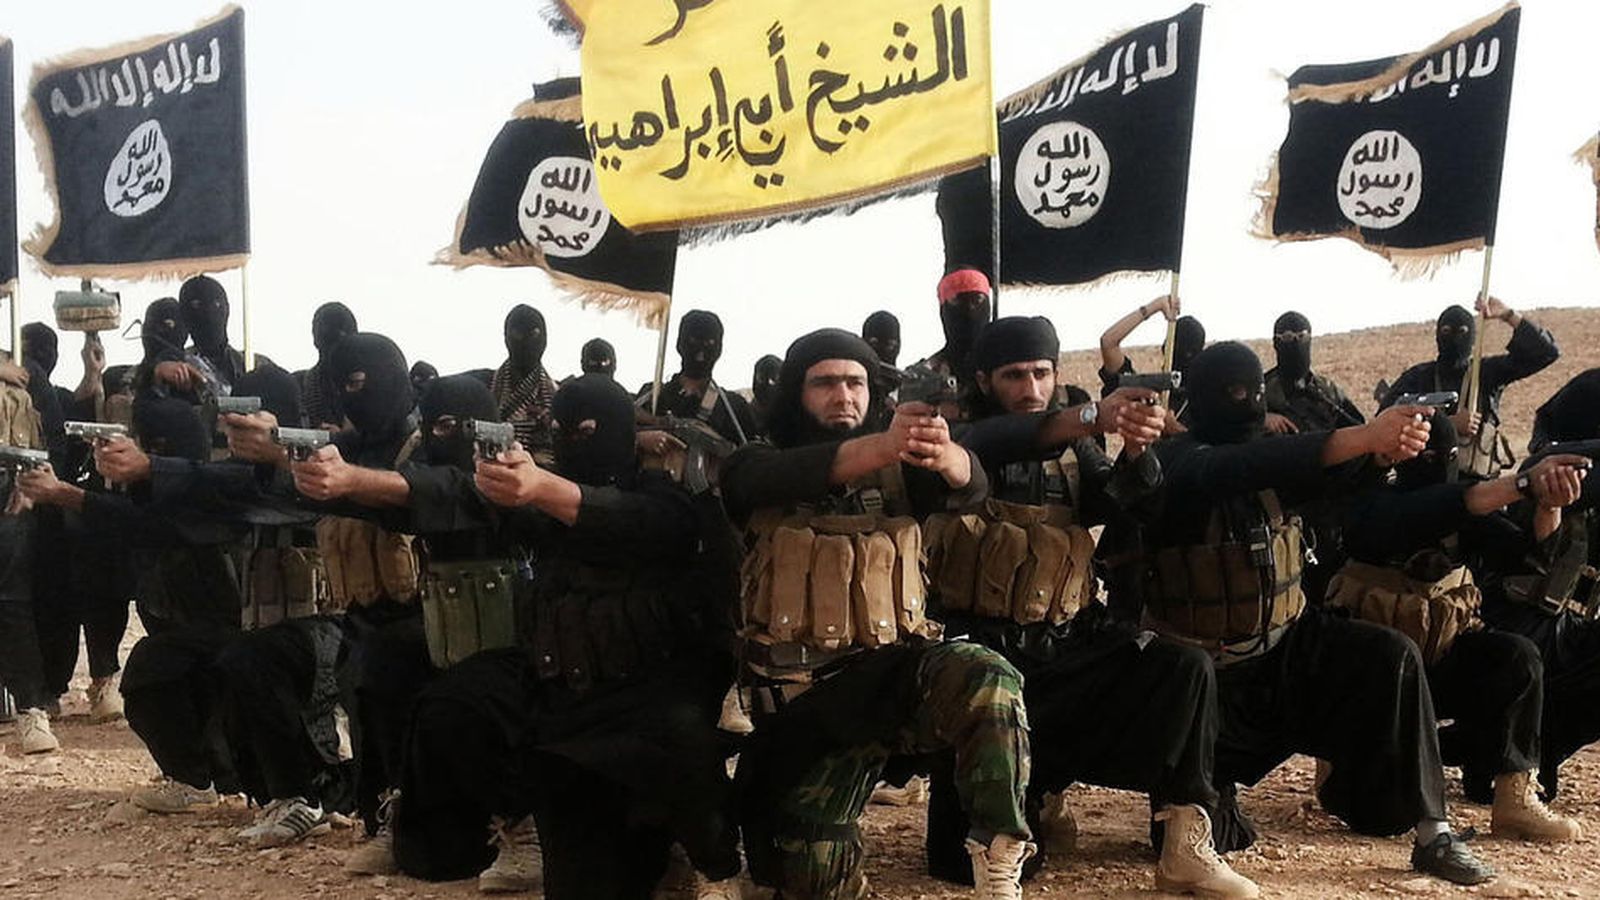 Foto: Imagen difundida por el Estado Islámico de uno de sus comandantes, Abu Waheeb, junto a otros combatientes.